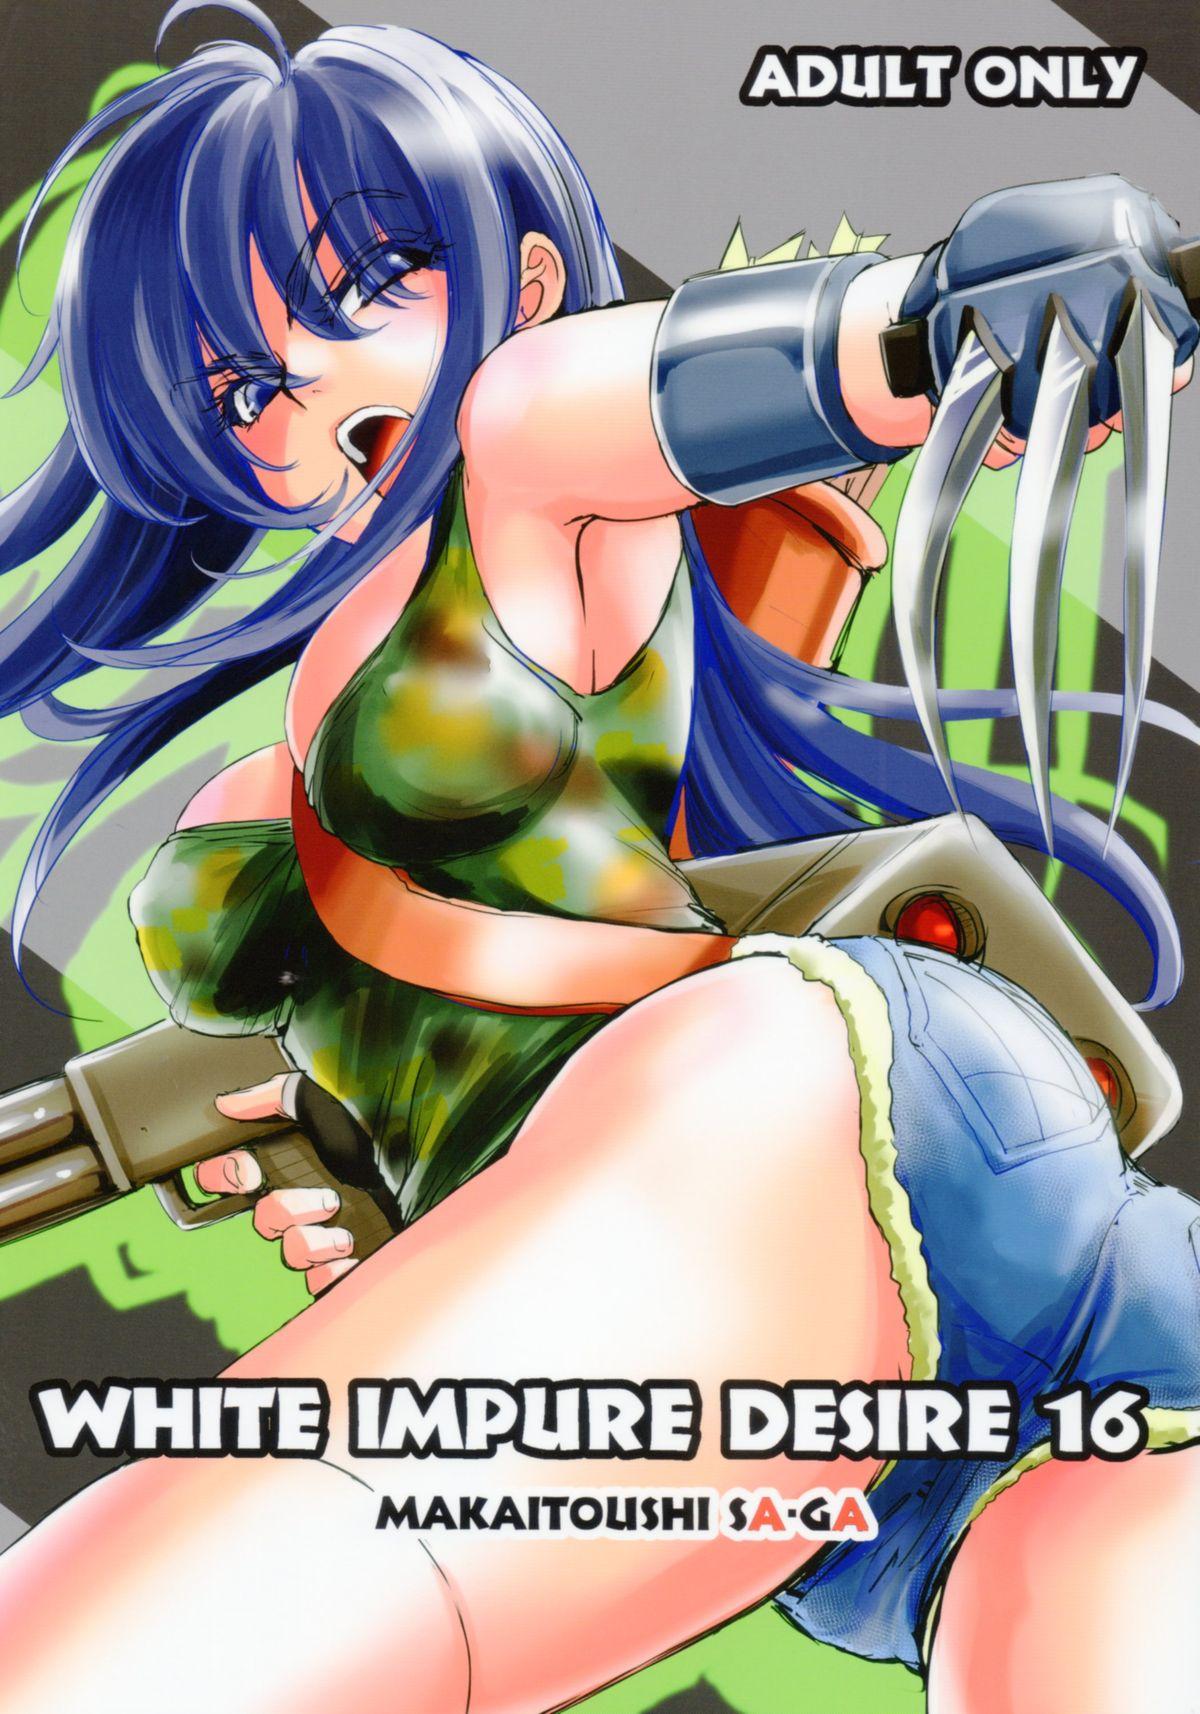 White Impure Desire16 0